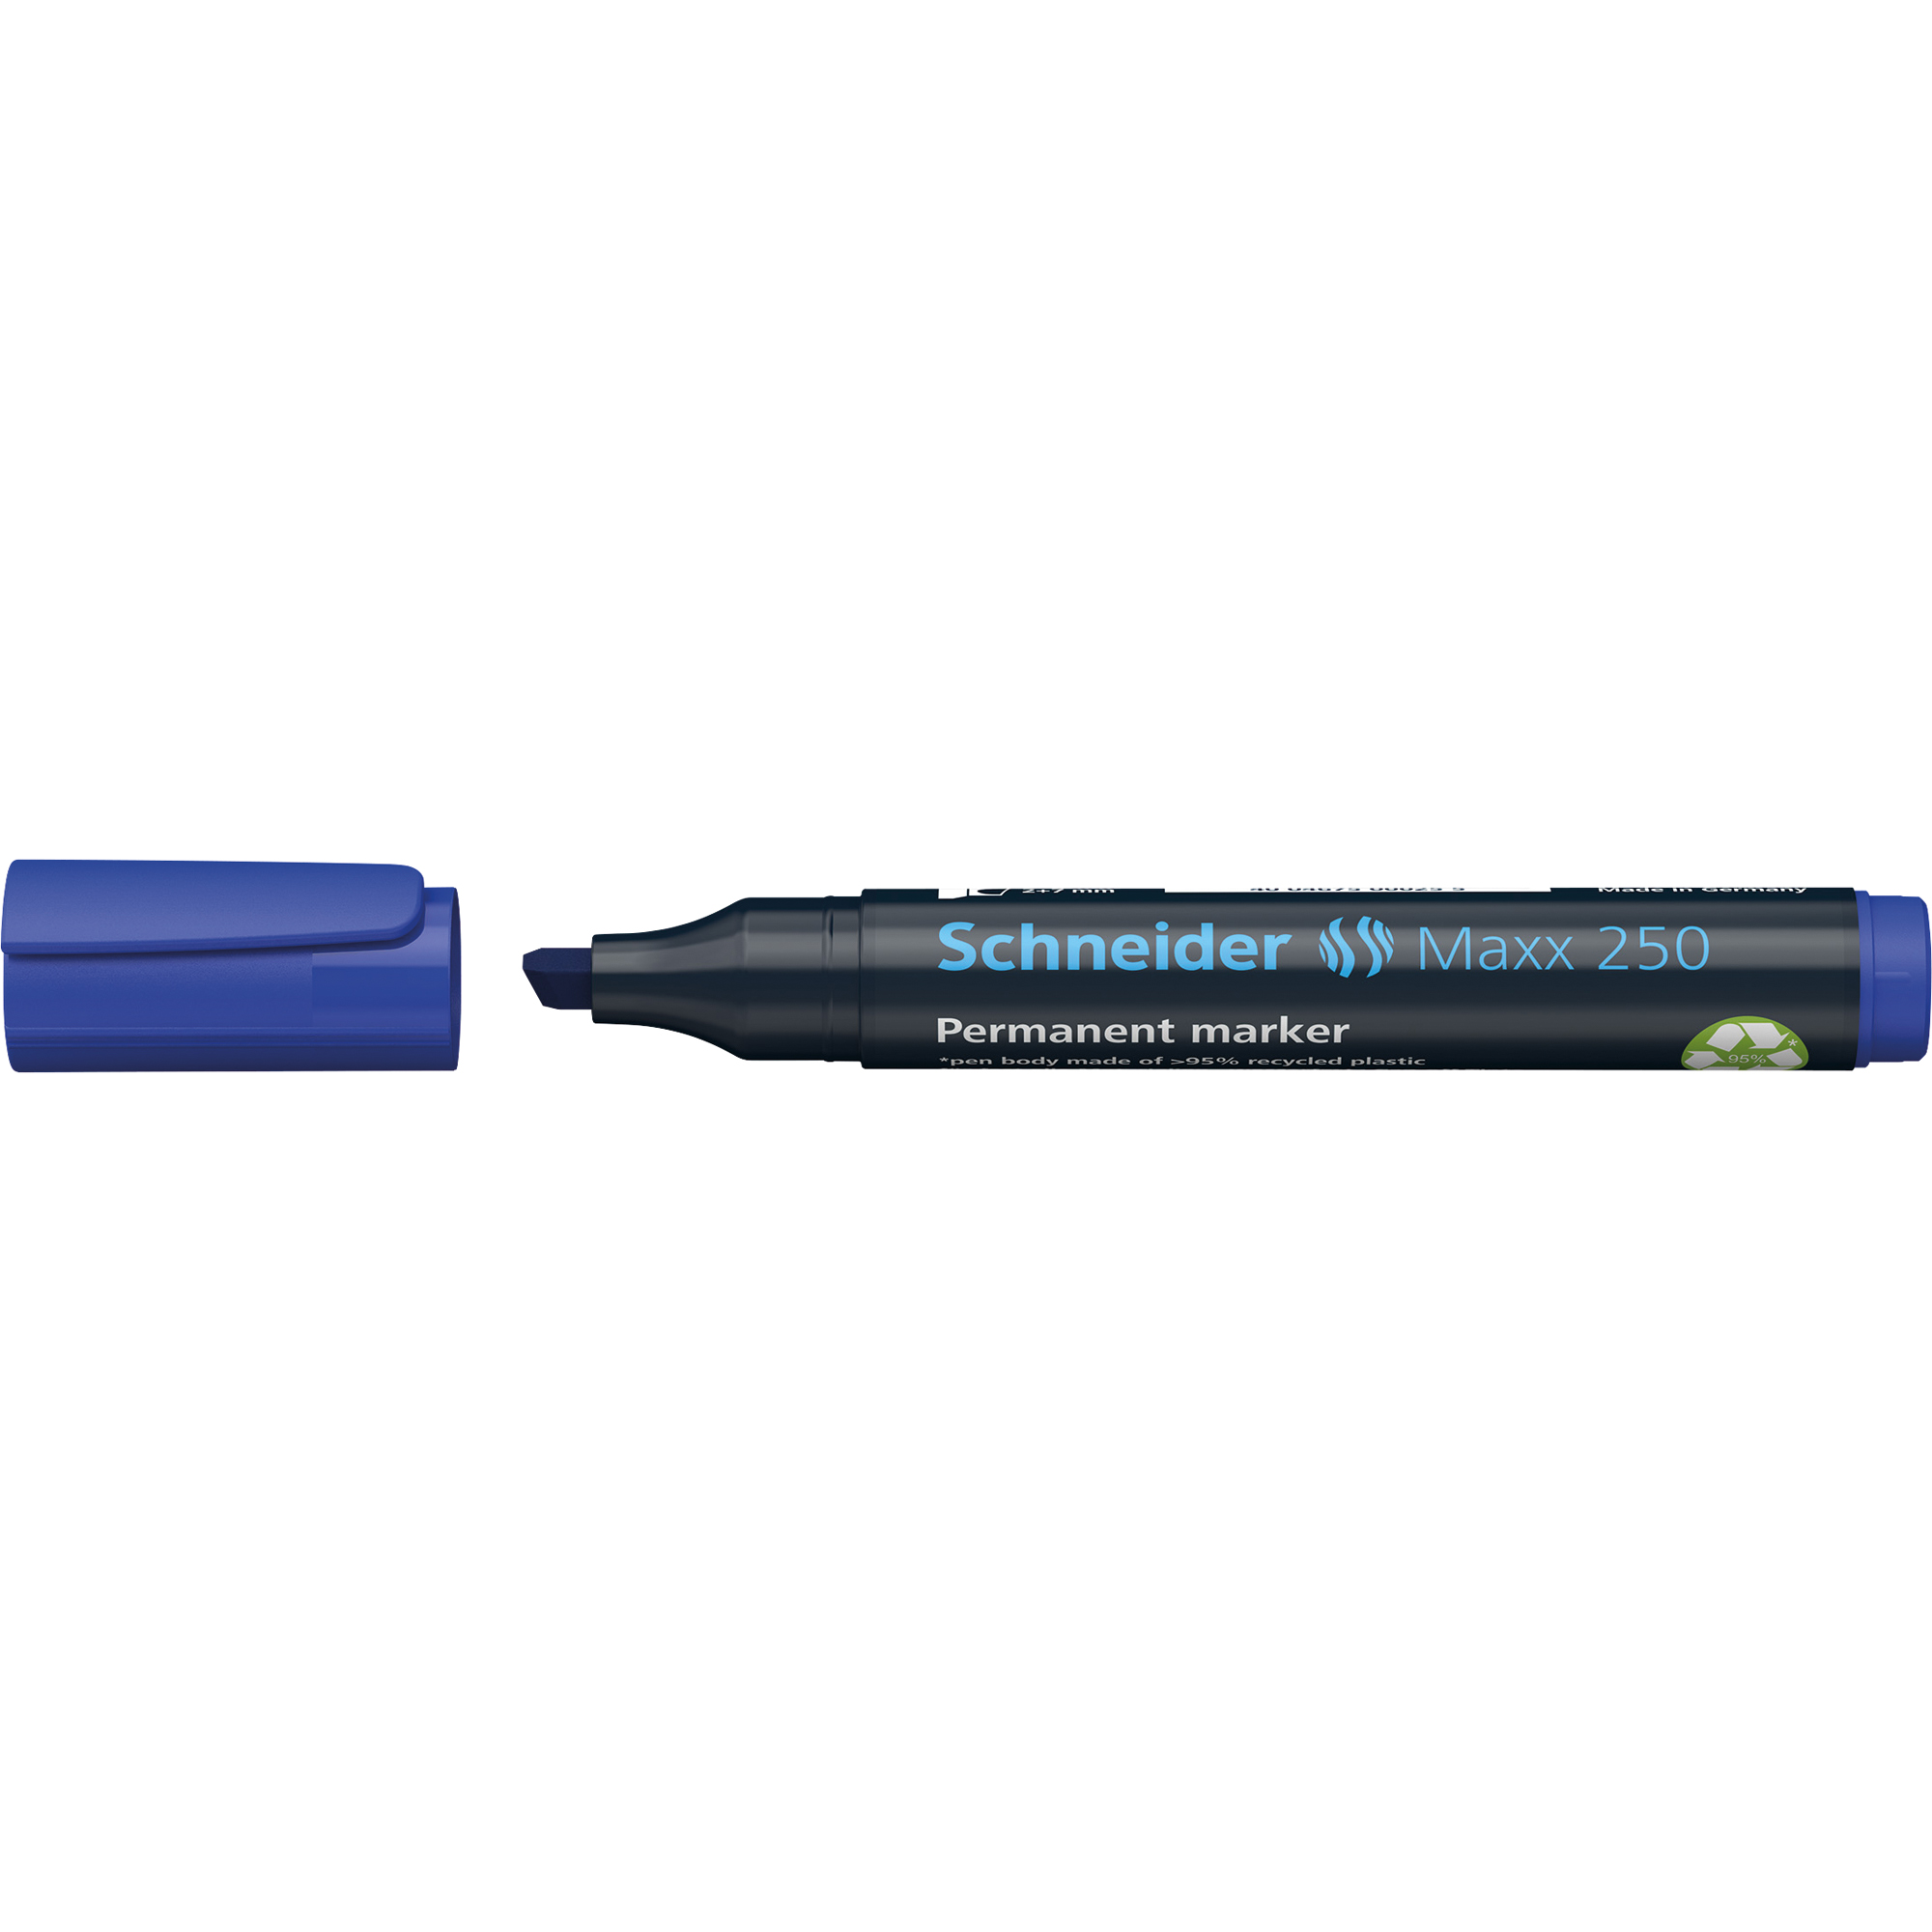 Schneider Permanentmarker Maxx 250 blau